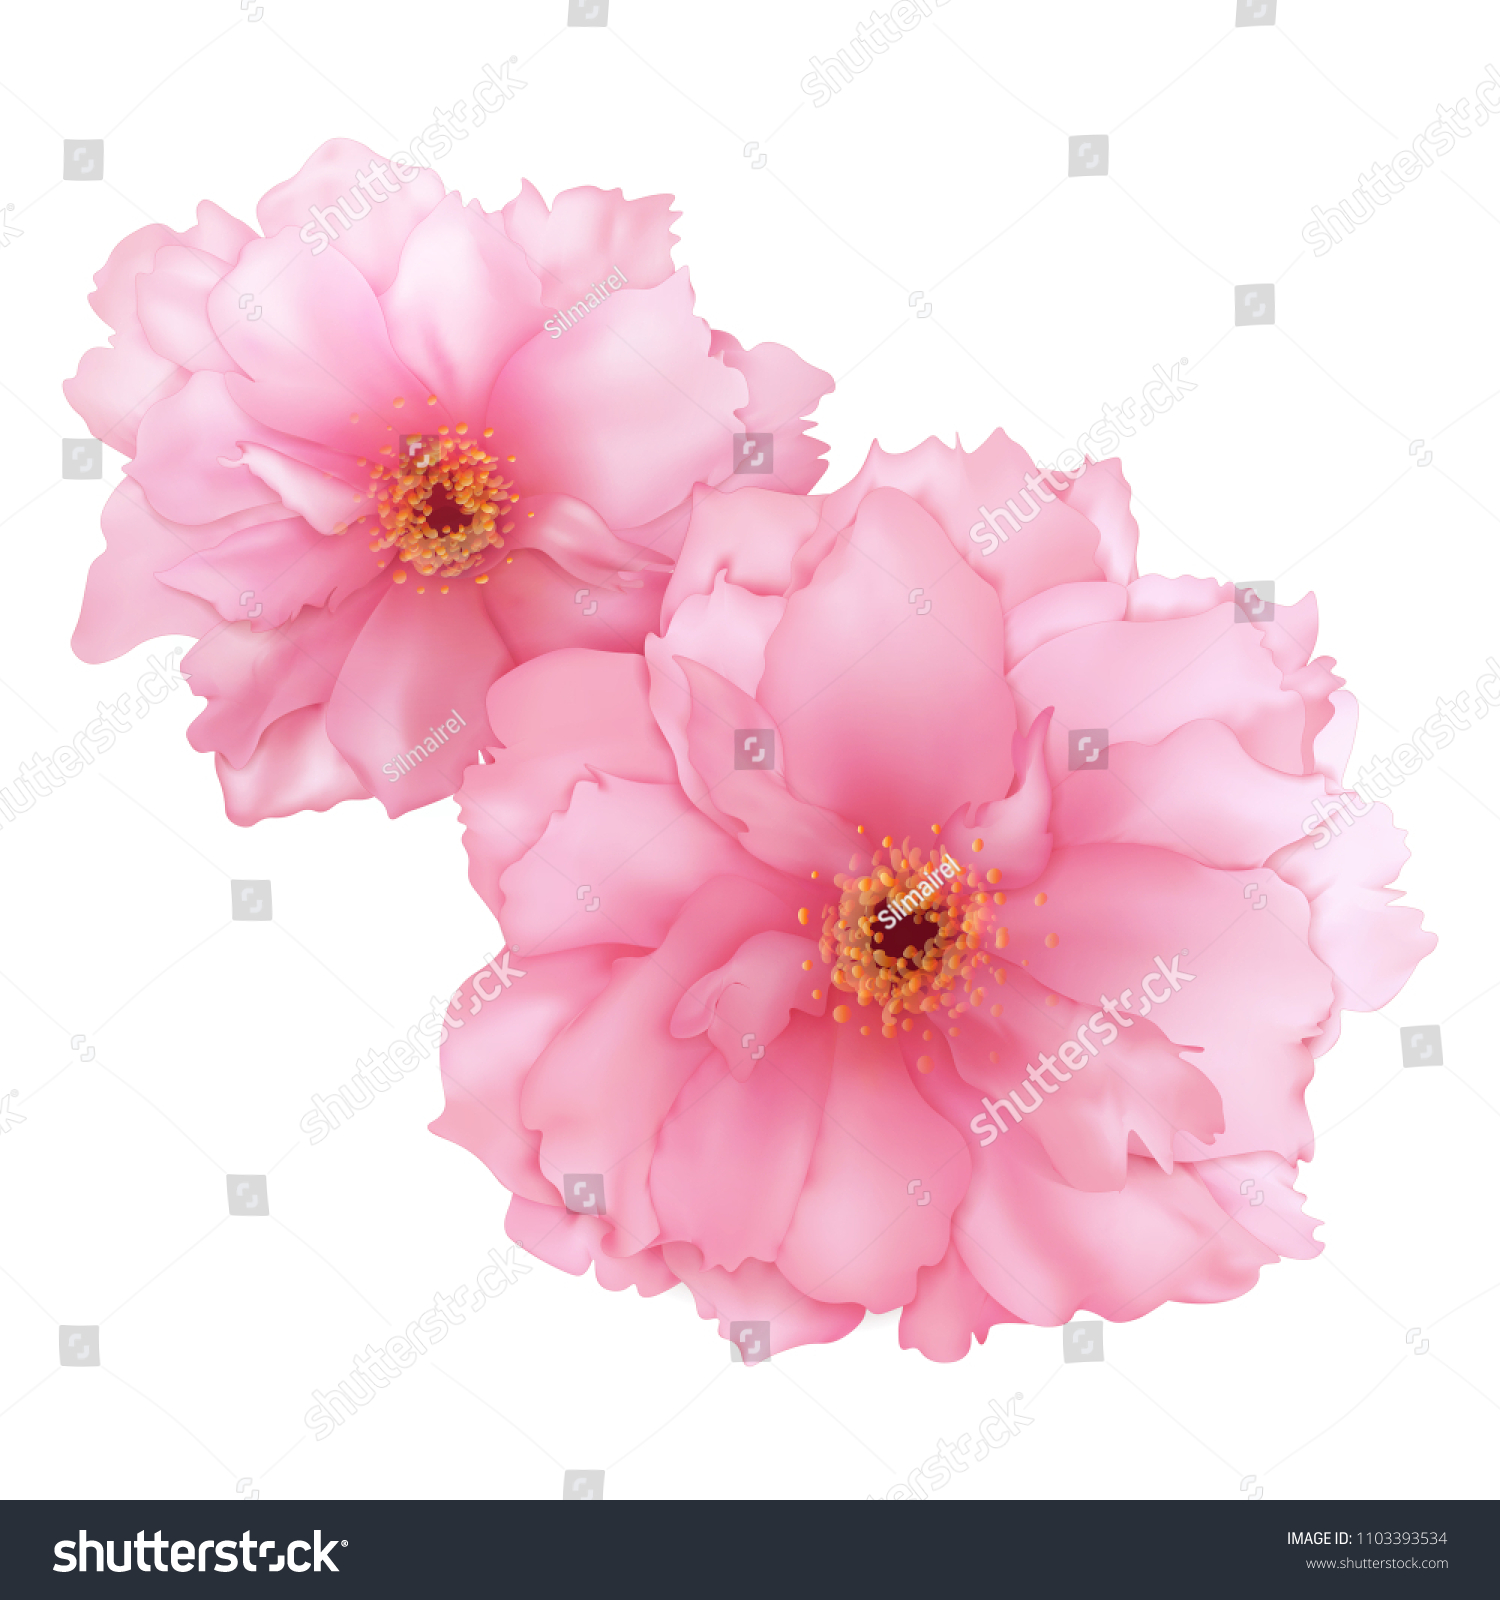 ベクター画像3dのリアルなピンクの桜の花のデジタルアート のベクター画像素材 ロイヤリティフリー